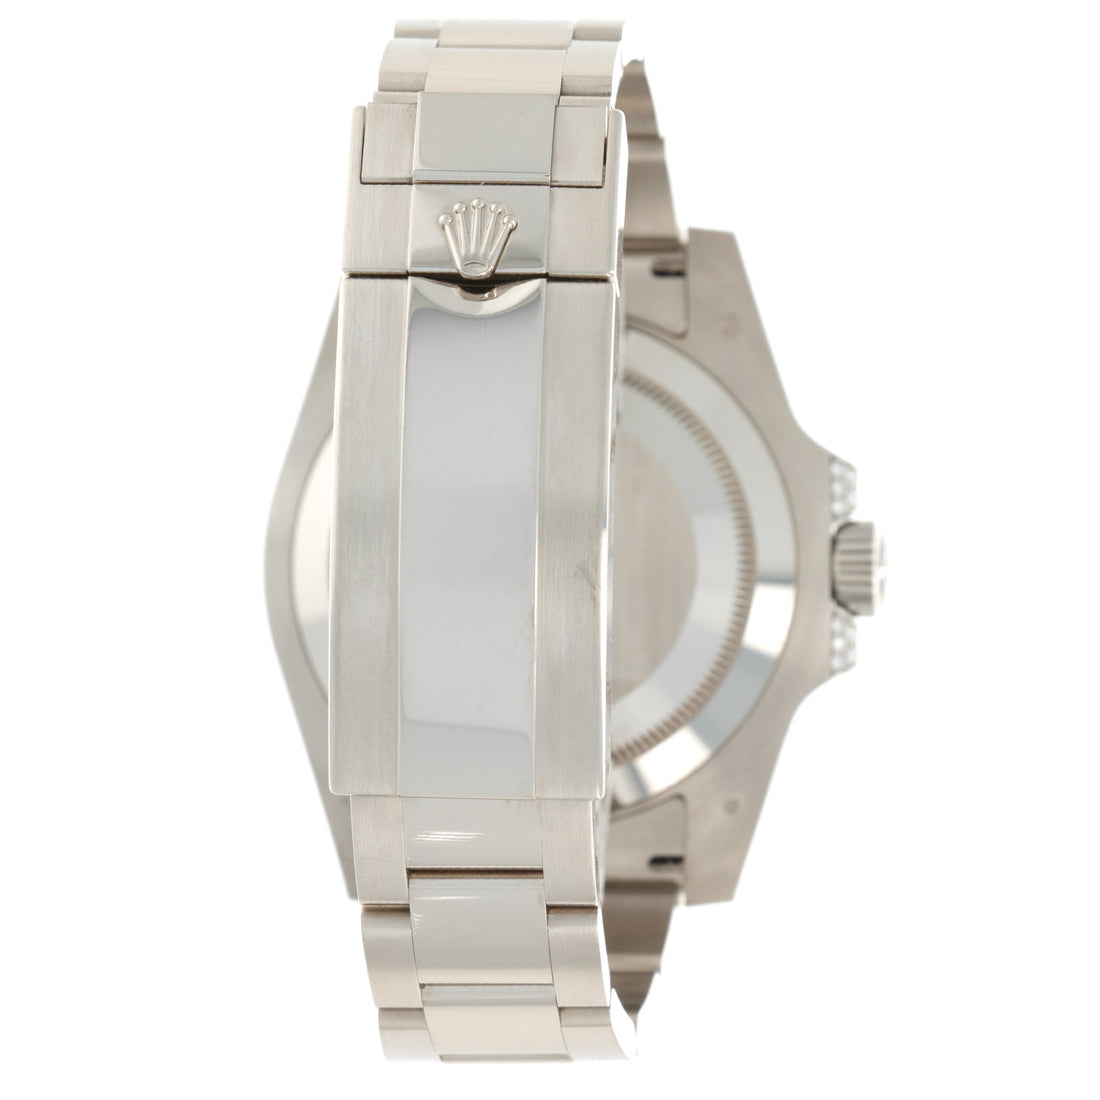 Rolex White Gold Submariner Diamond Sapphire Watch Ref. 116659